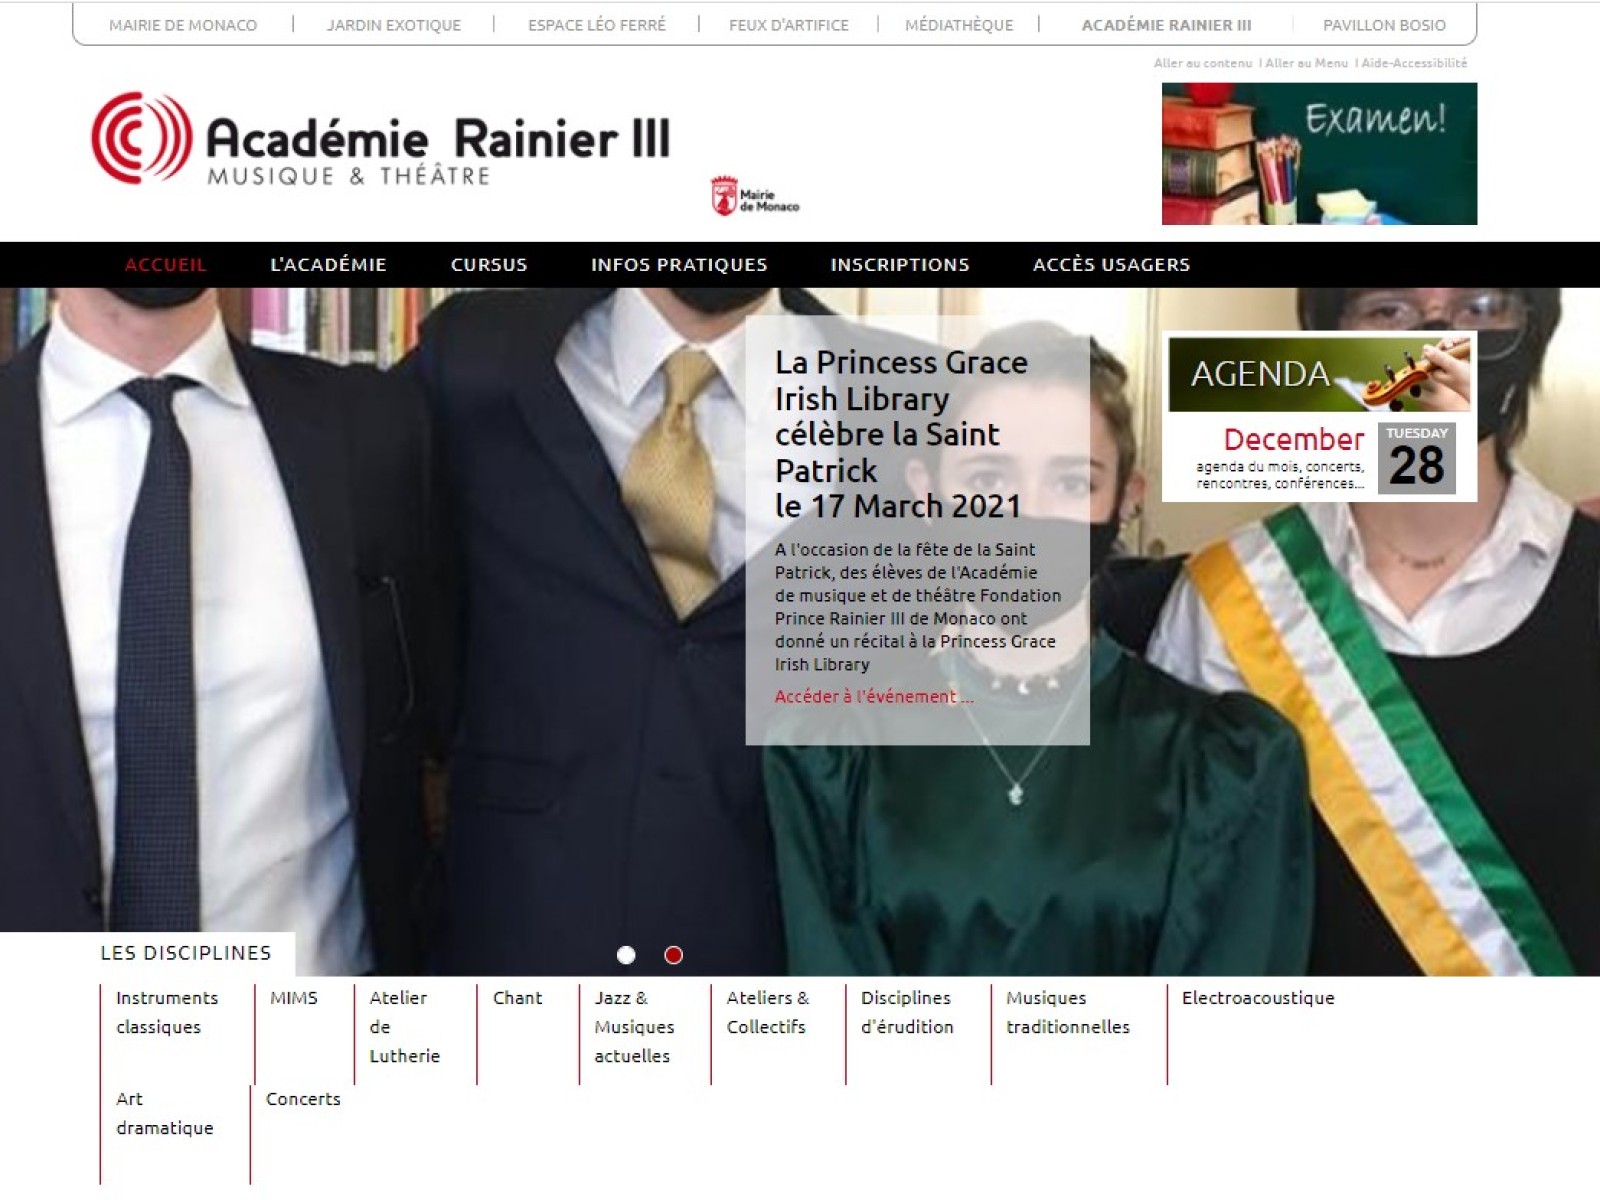 Académie Rainier III : Mise en ligne d'un nouveau site internet